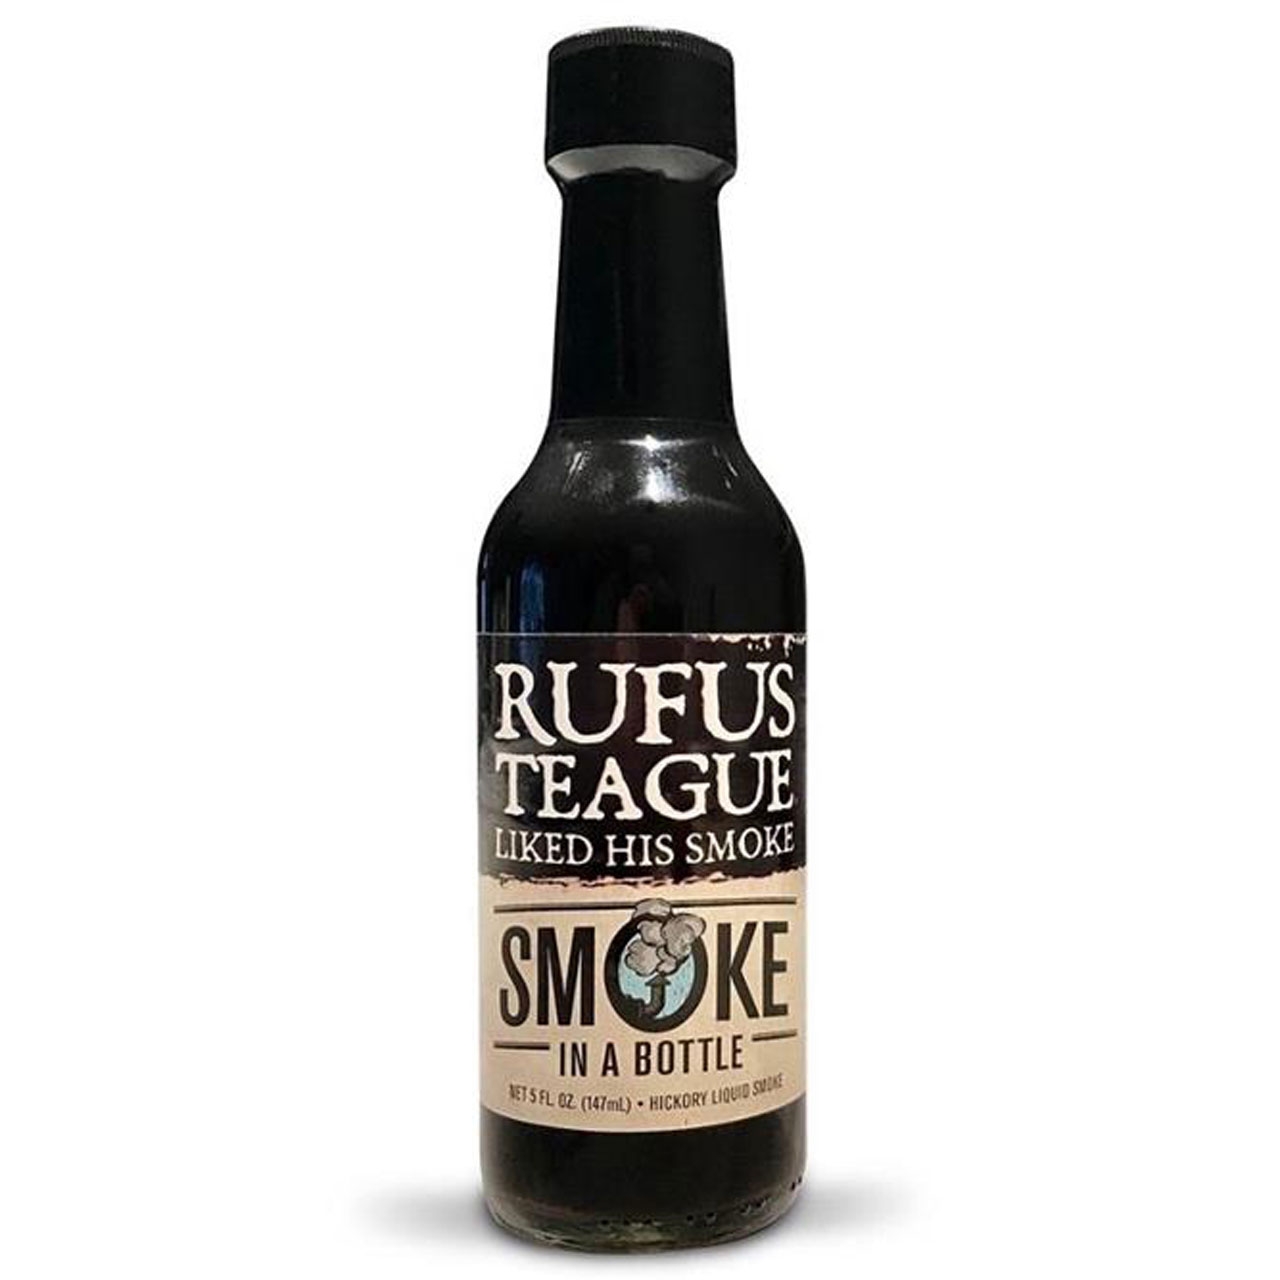 Rufus Teague Smoke in a Bottle, 147ml